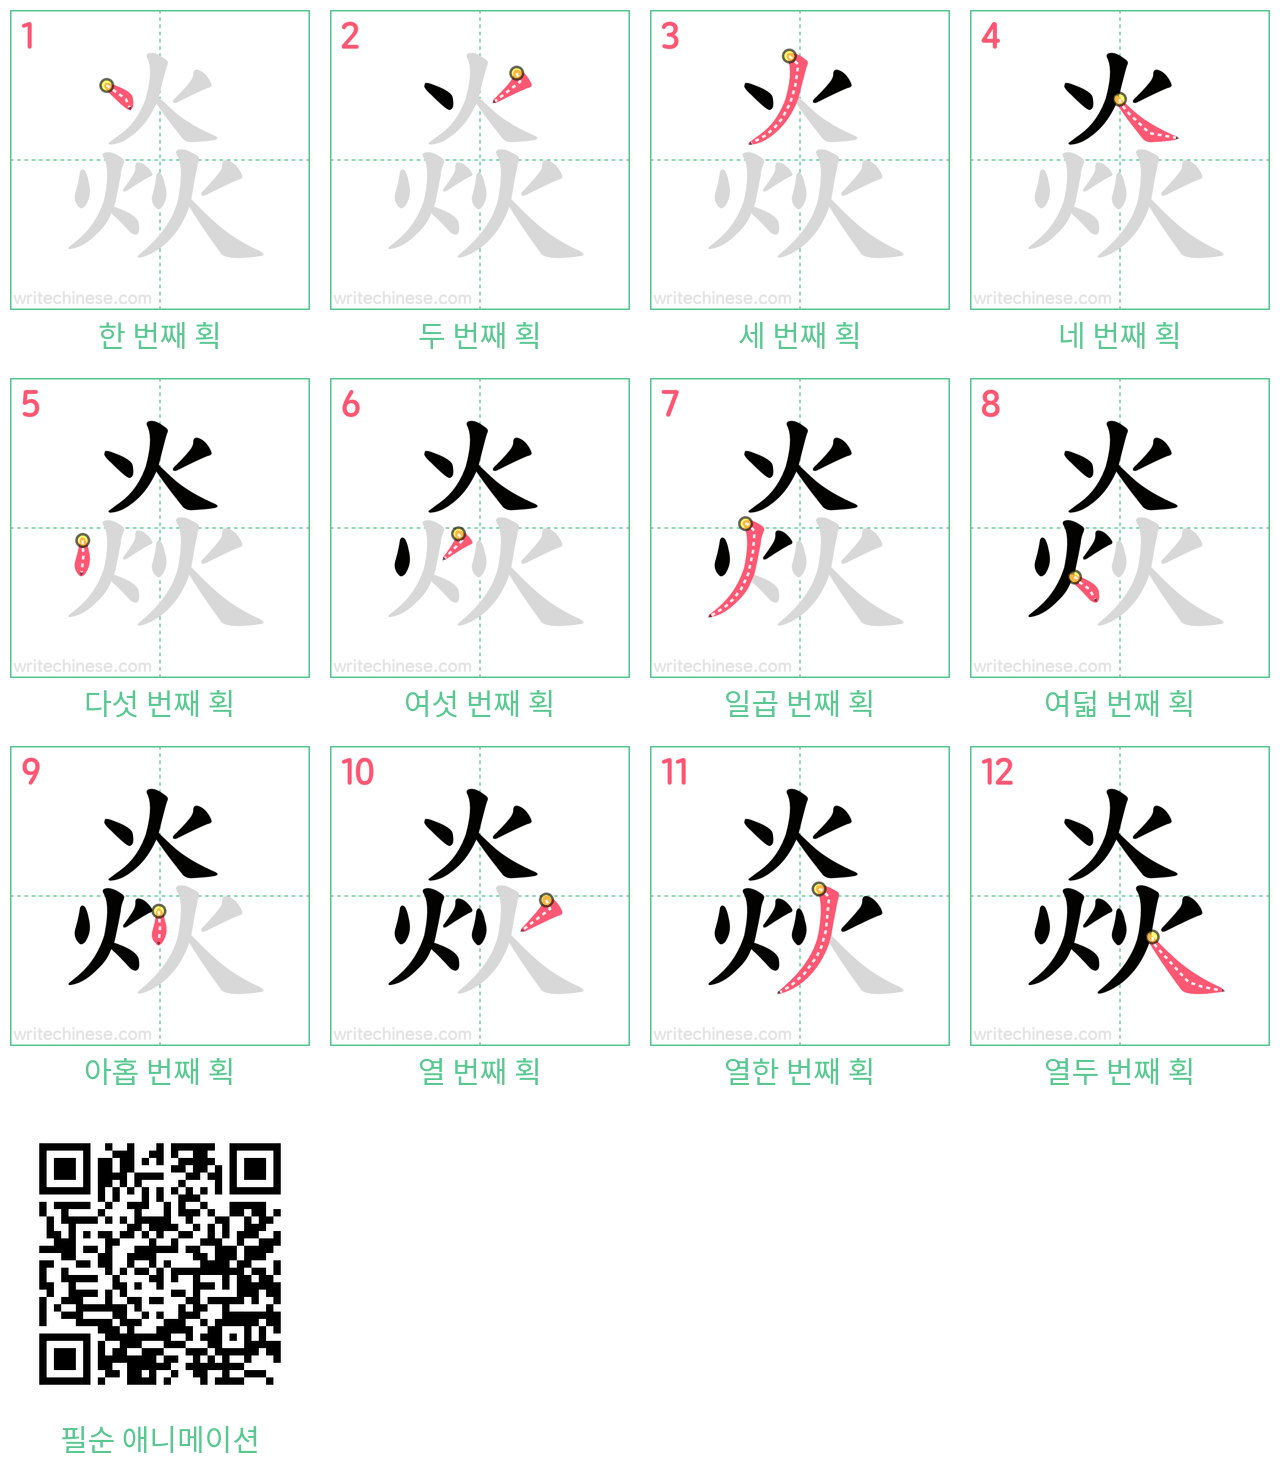 焱 step-by-step stroke order diagrams